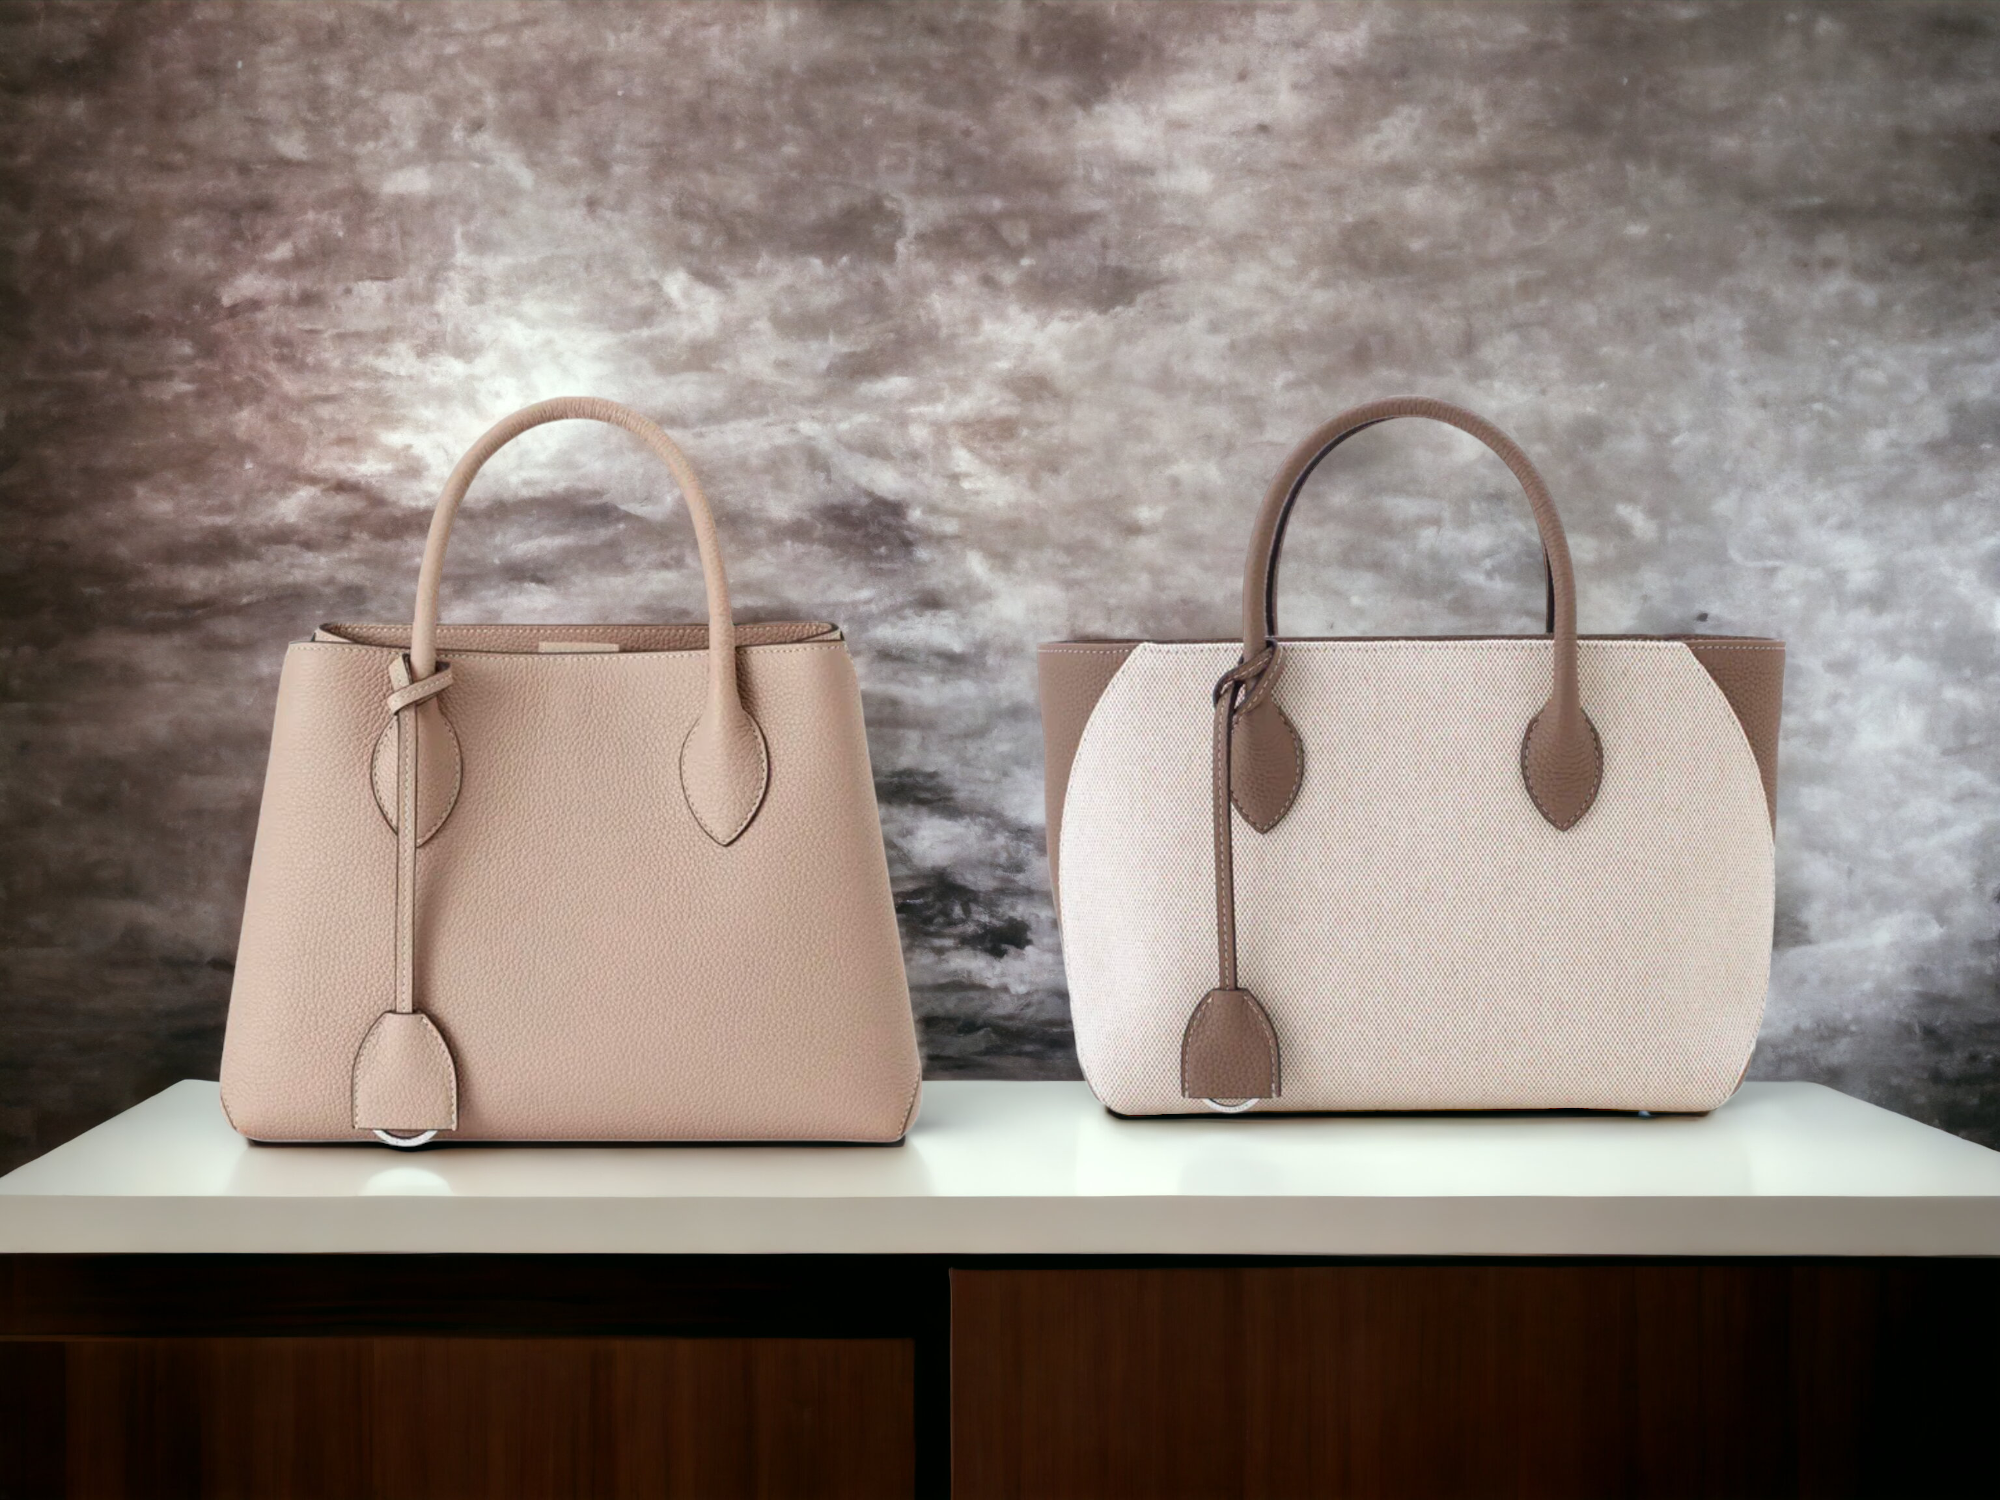 Elegantná kožená kabelka vs. látková taška značky BONAVENTURA na hladkom pozadí, ktorá symbolizuje luxus a kvalitu.